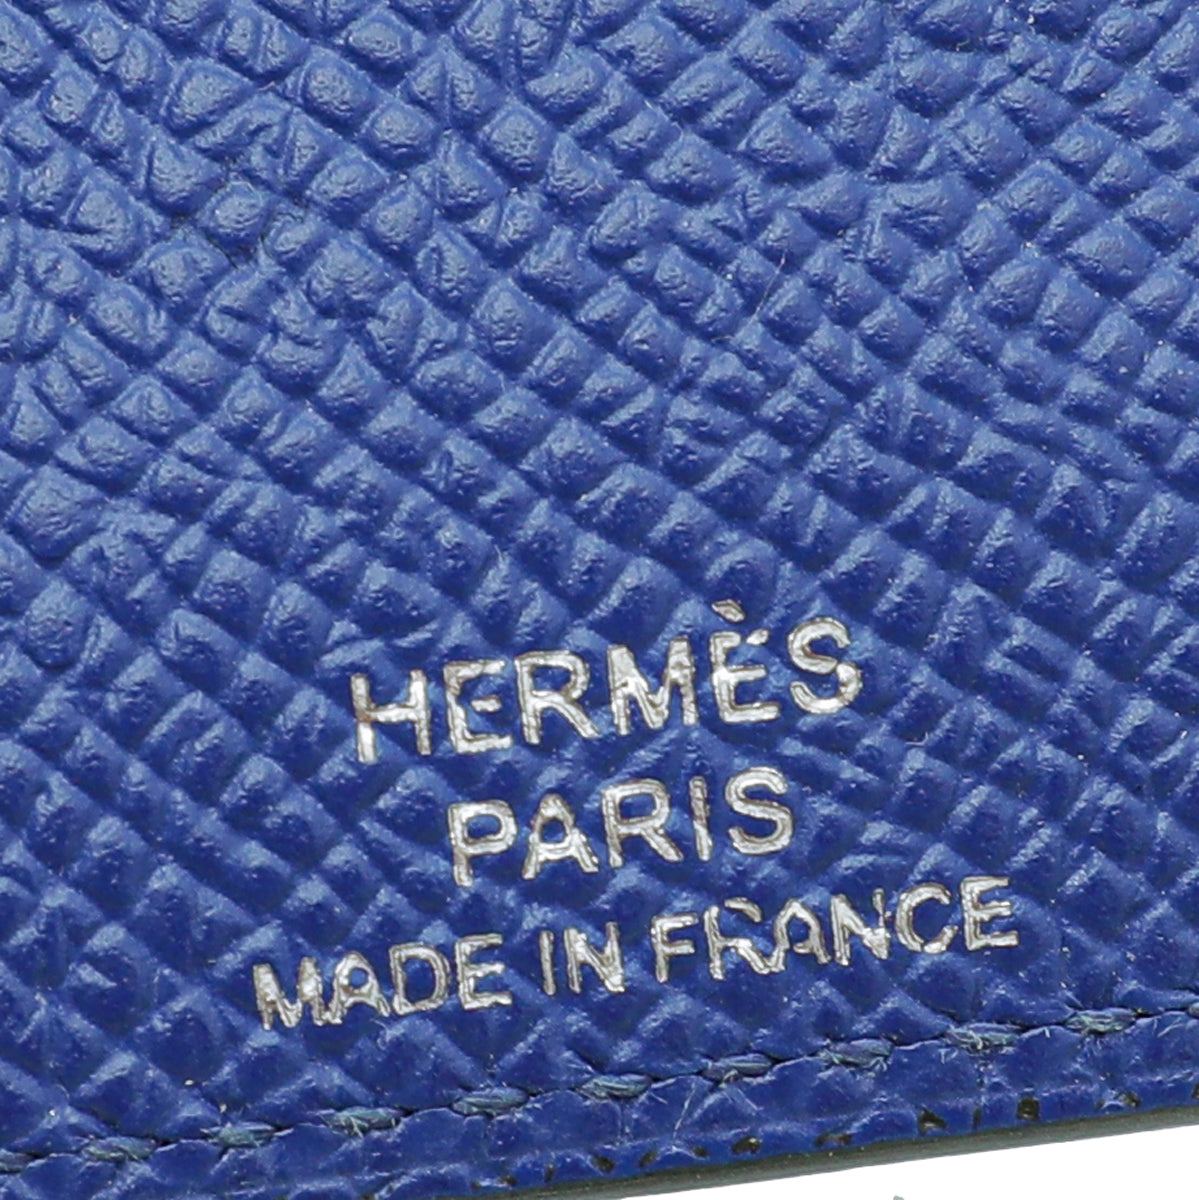 Hermès Multicolor Leather Les Petits Chevaux Card Holder